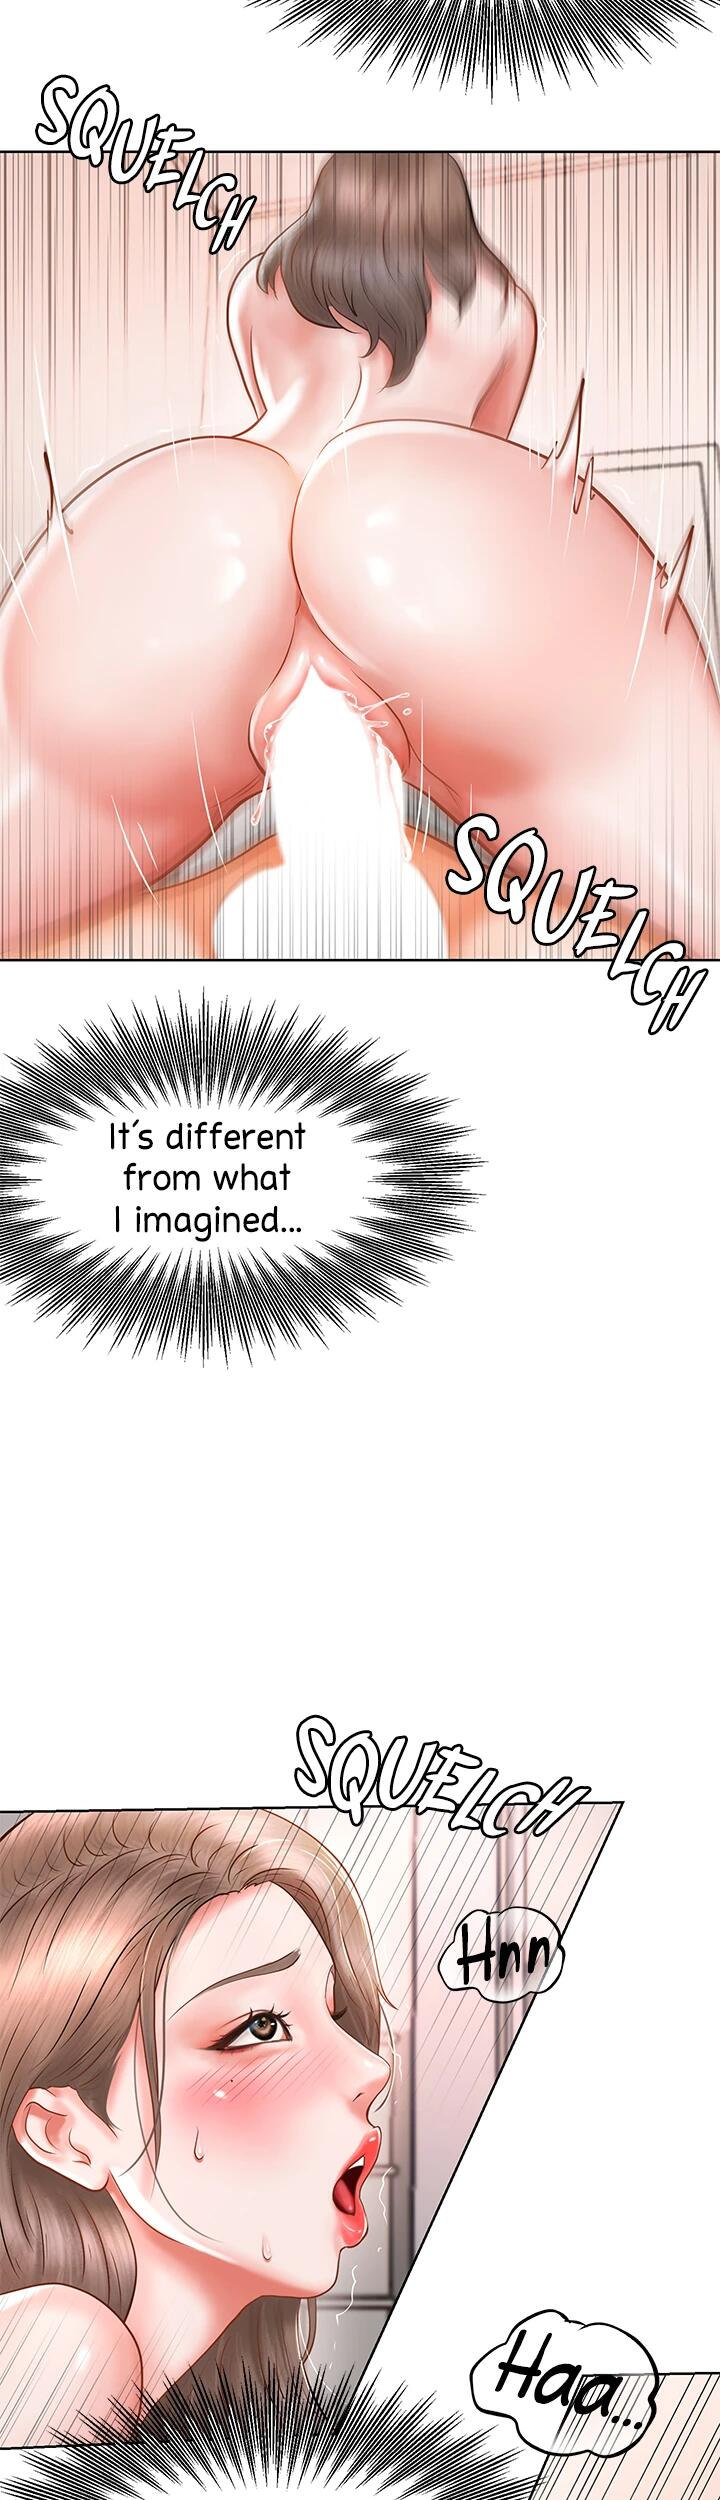 Sexy Manga Club - Chapter 2 Page 33